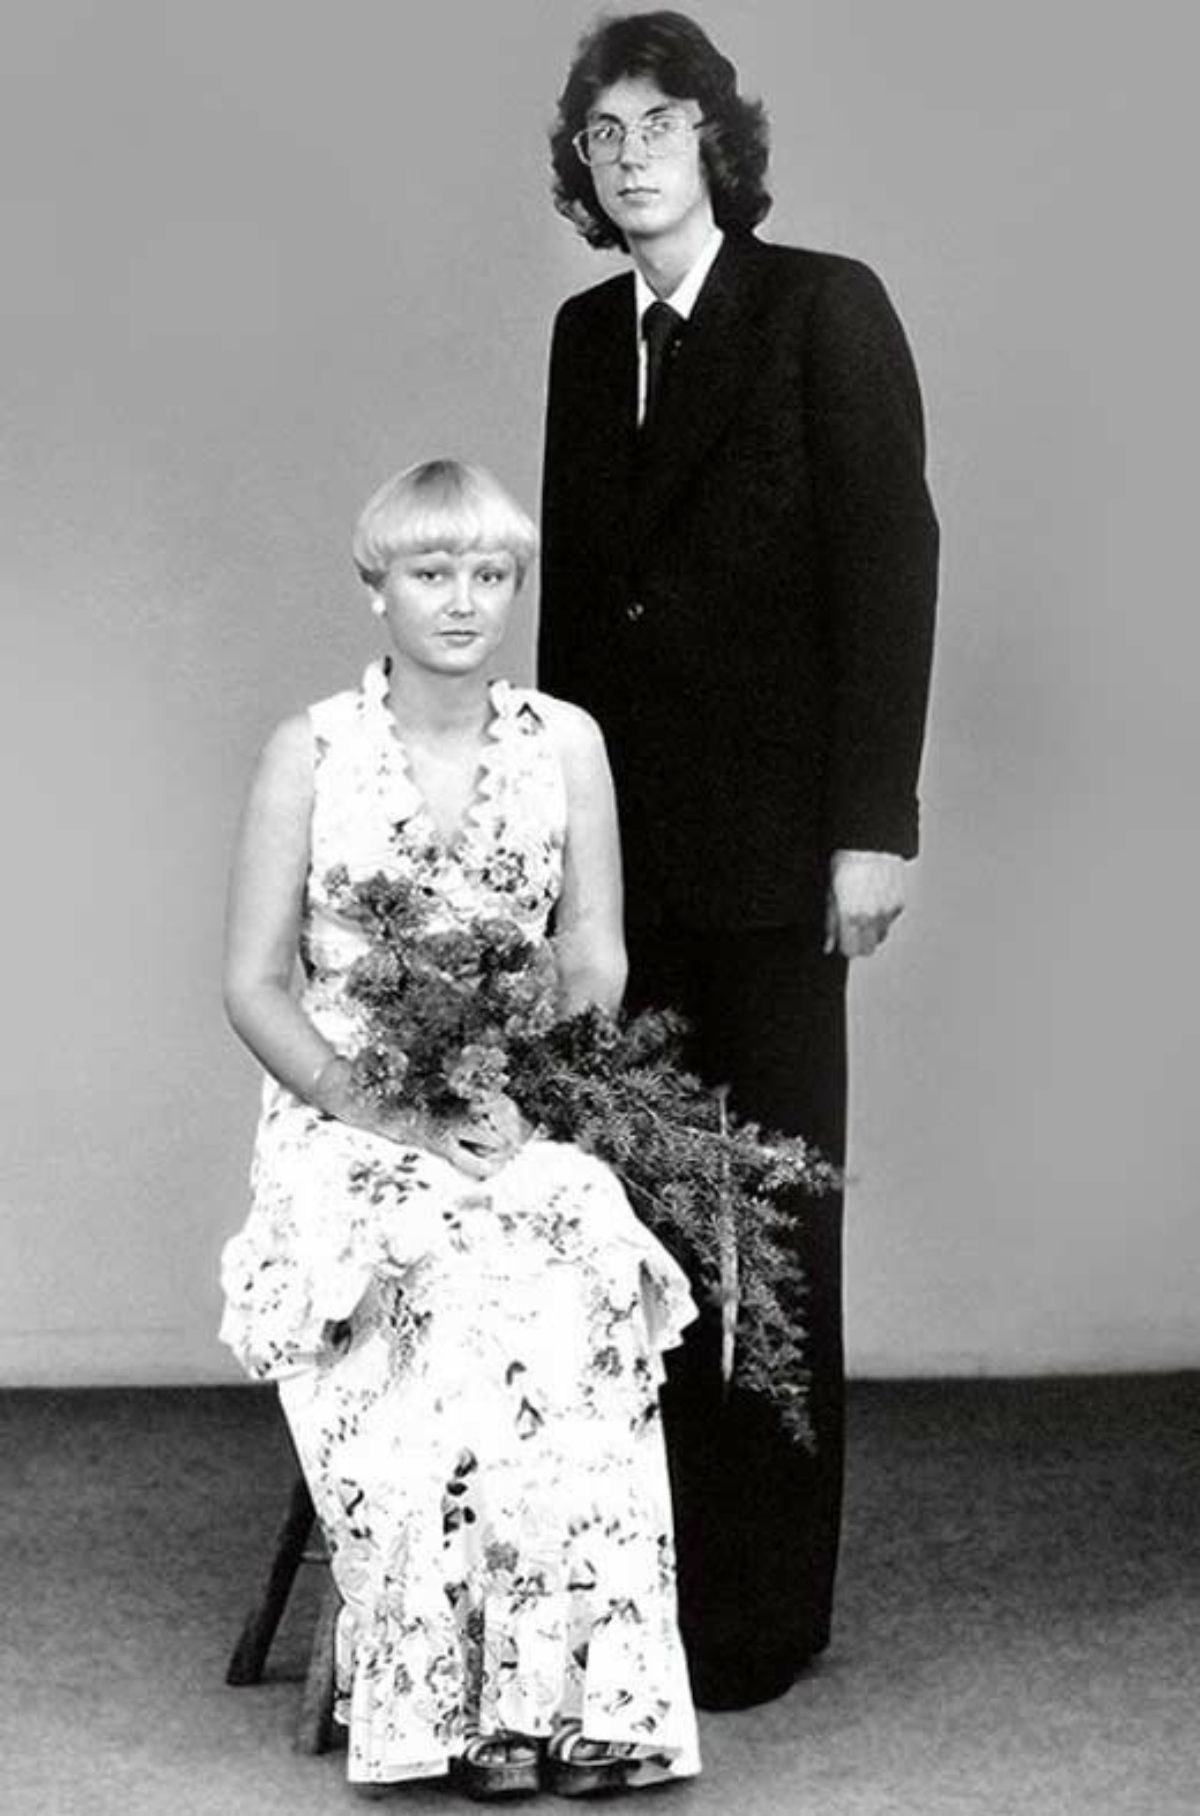 安妮-维斯基的婚礼照片